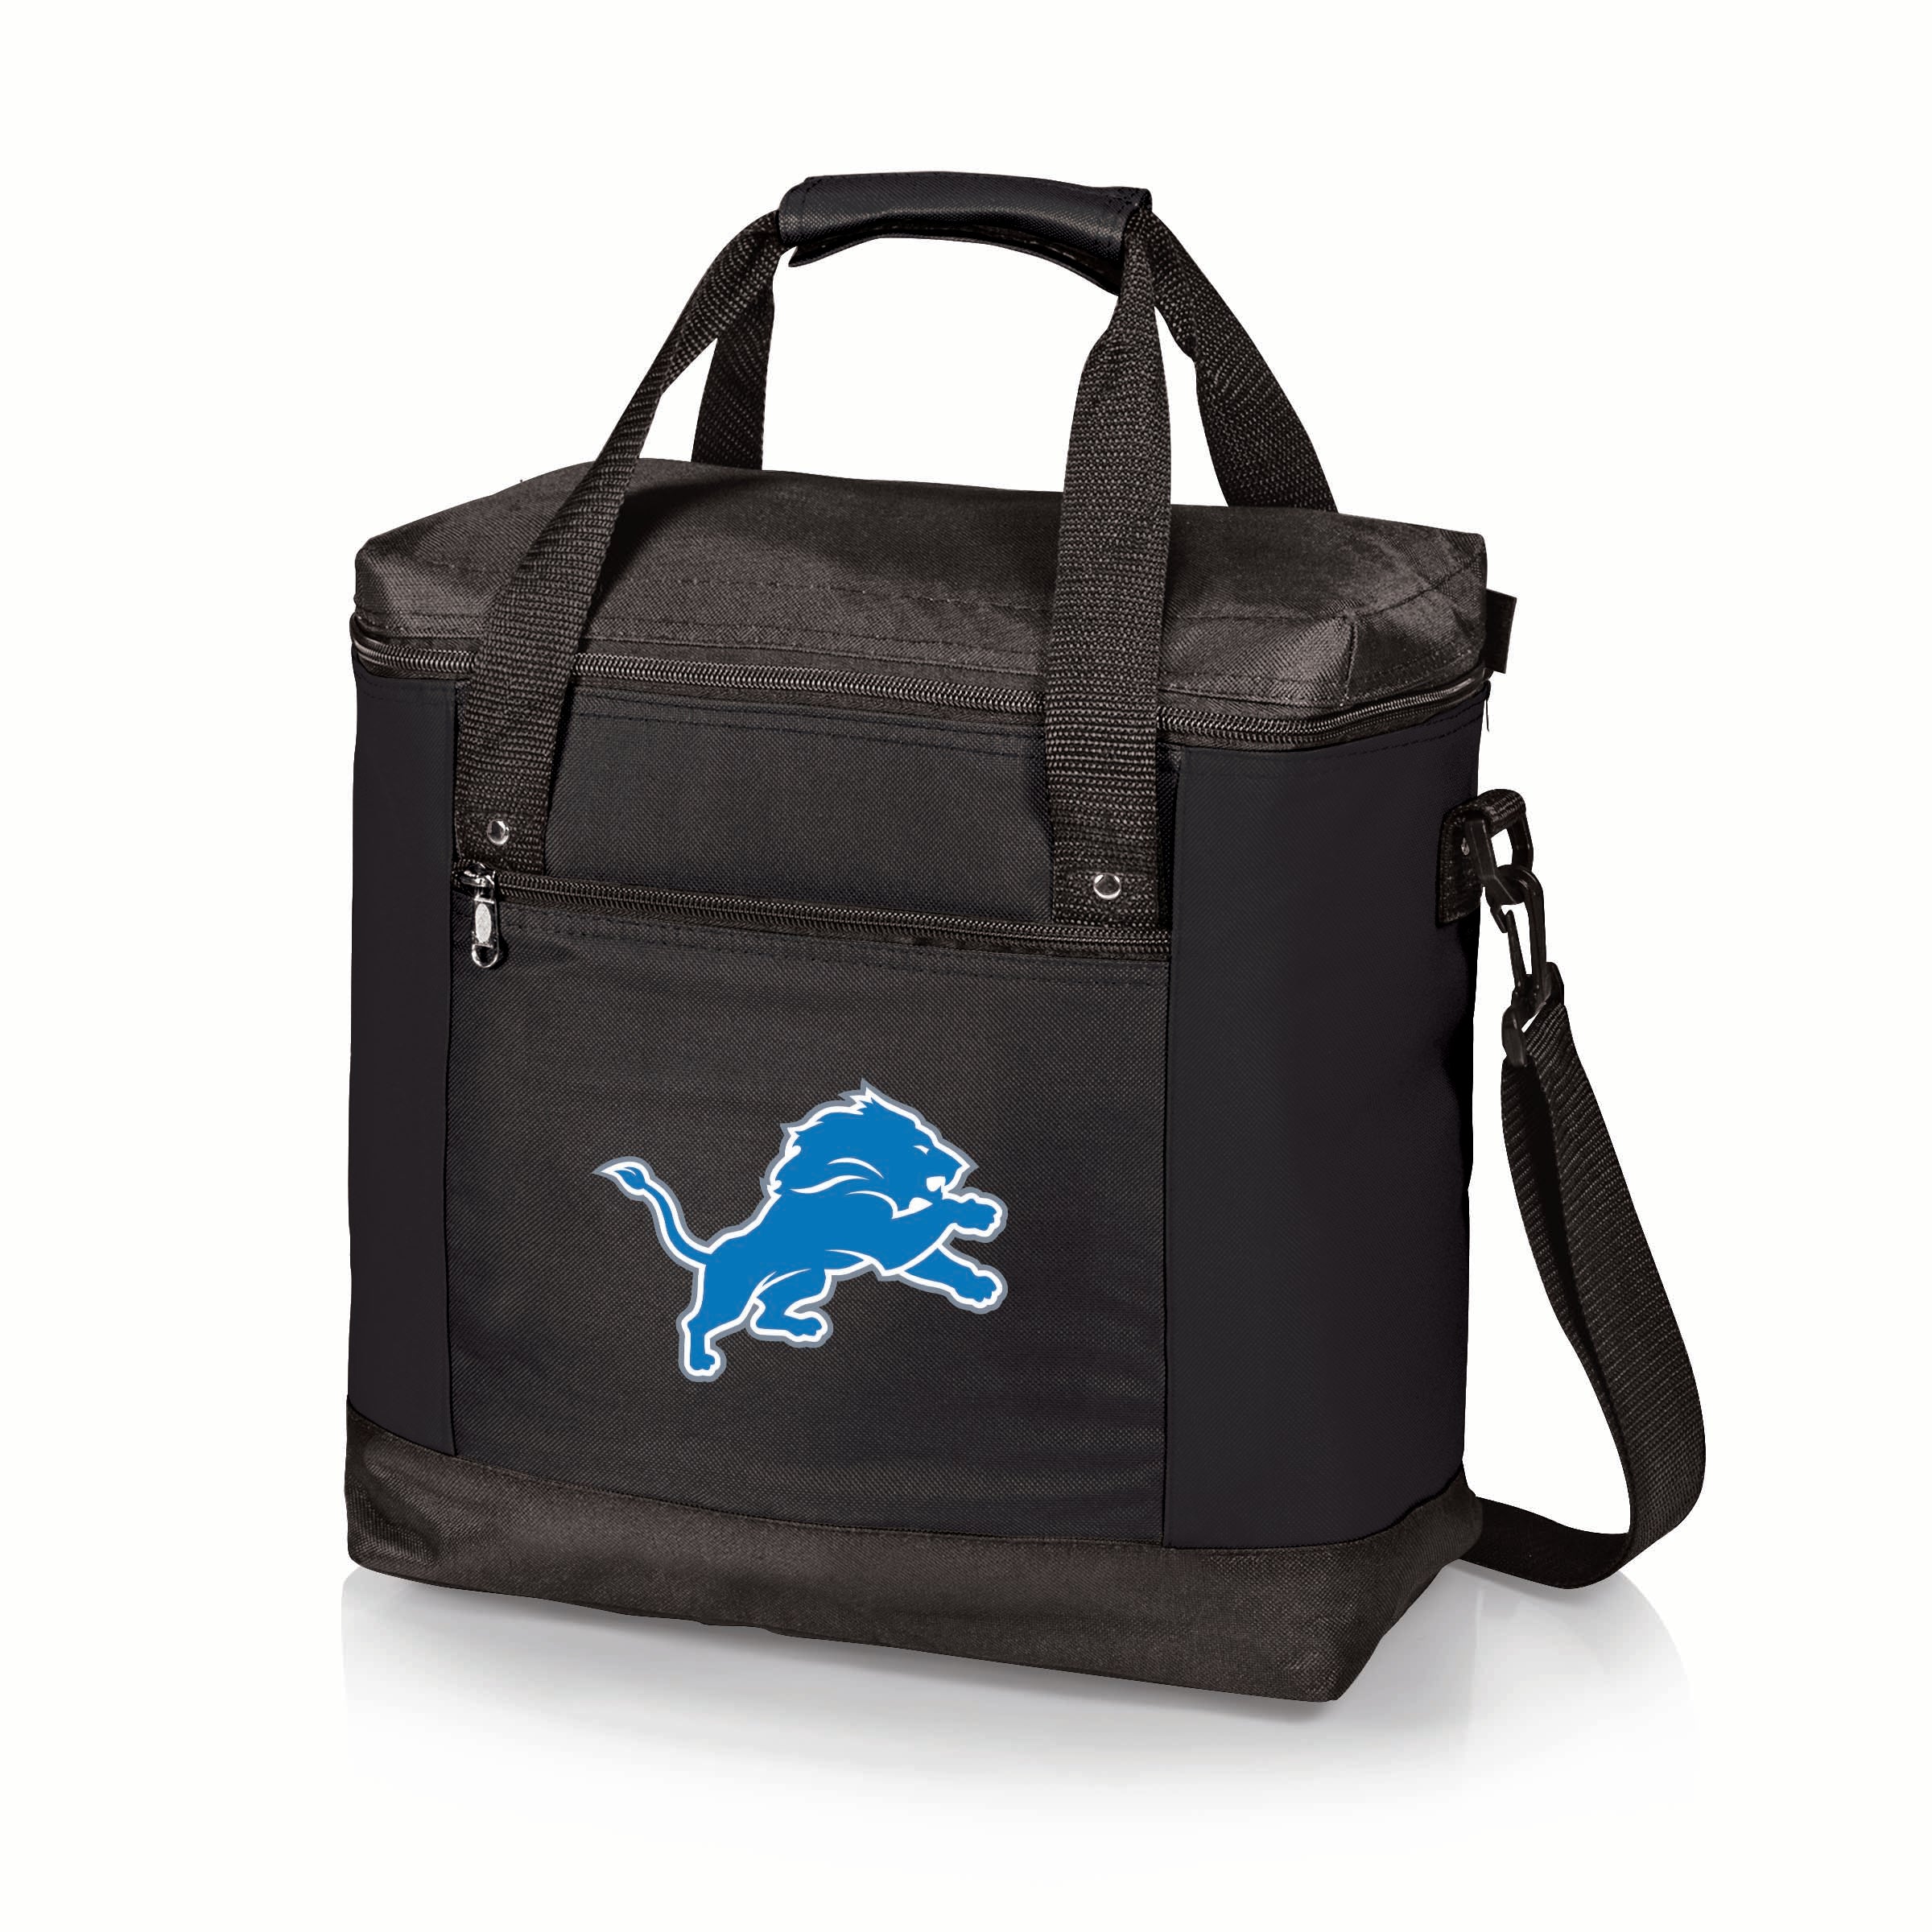 Detroit Lions - Montero Cooler Tote Bag